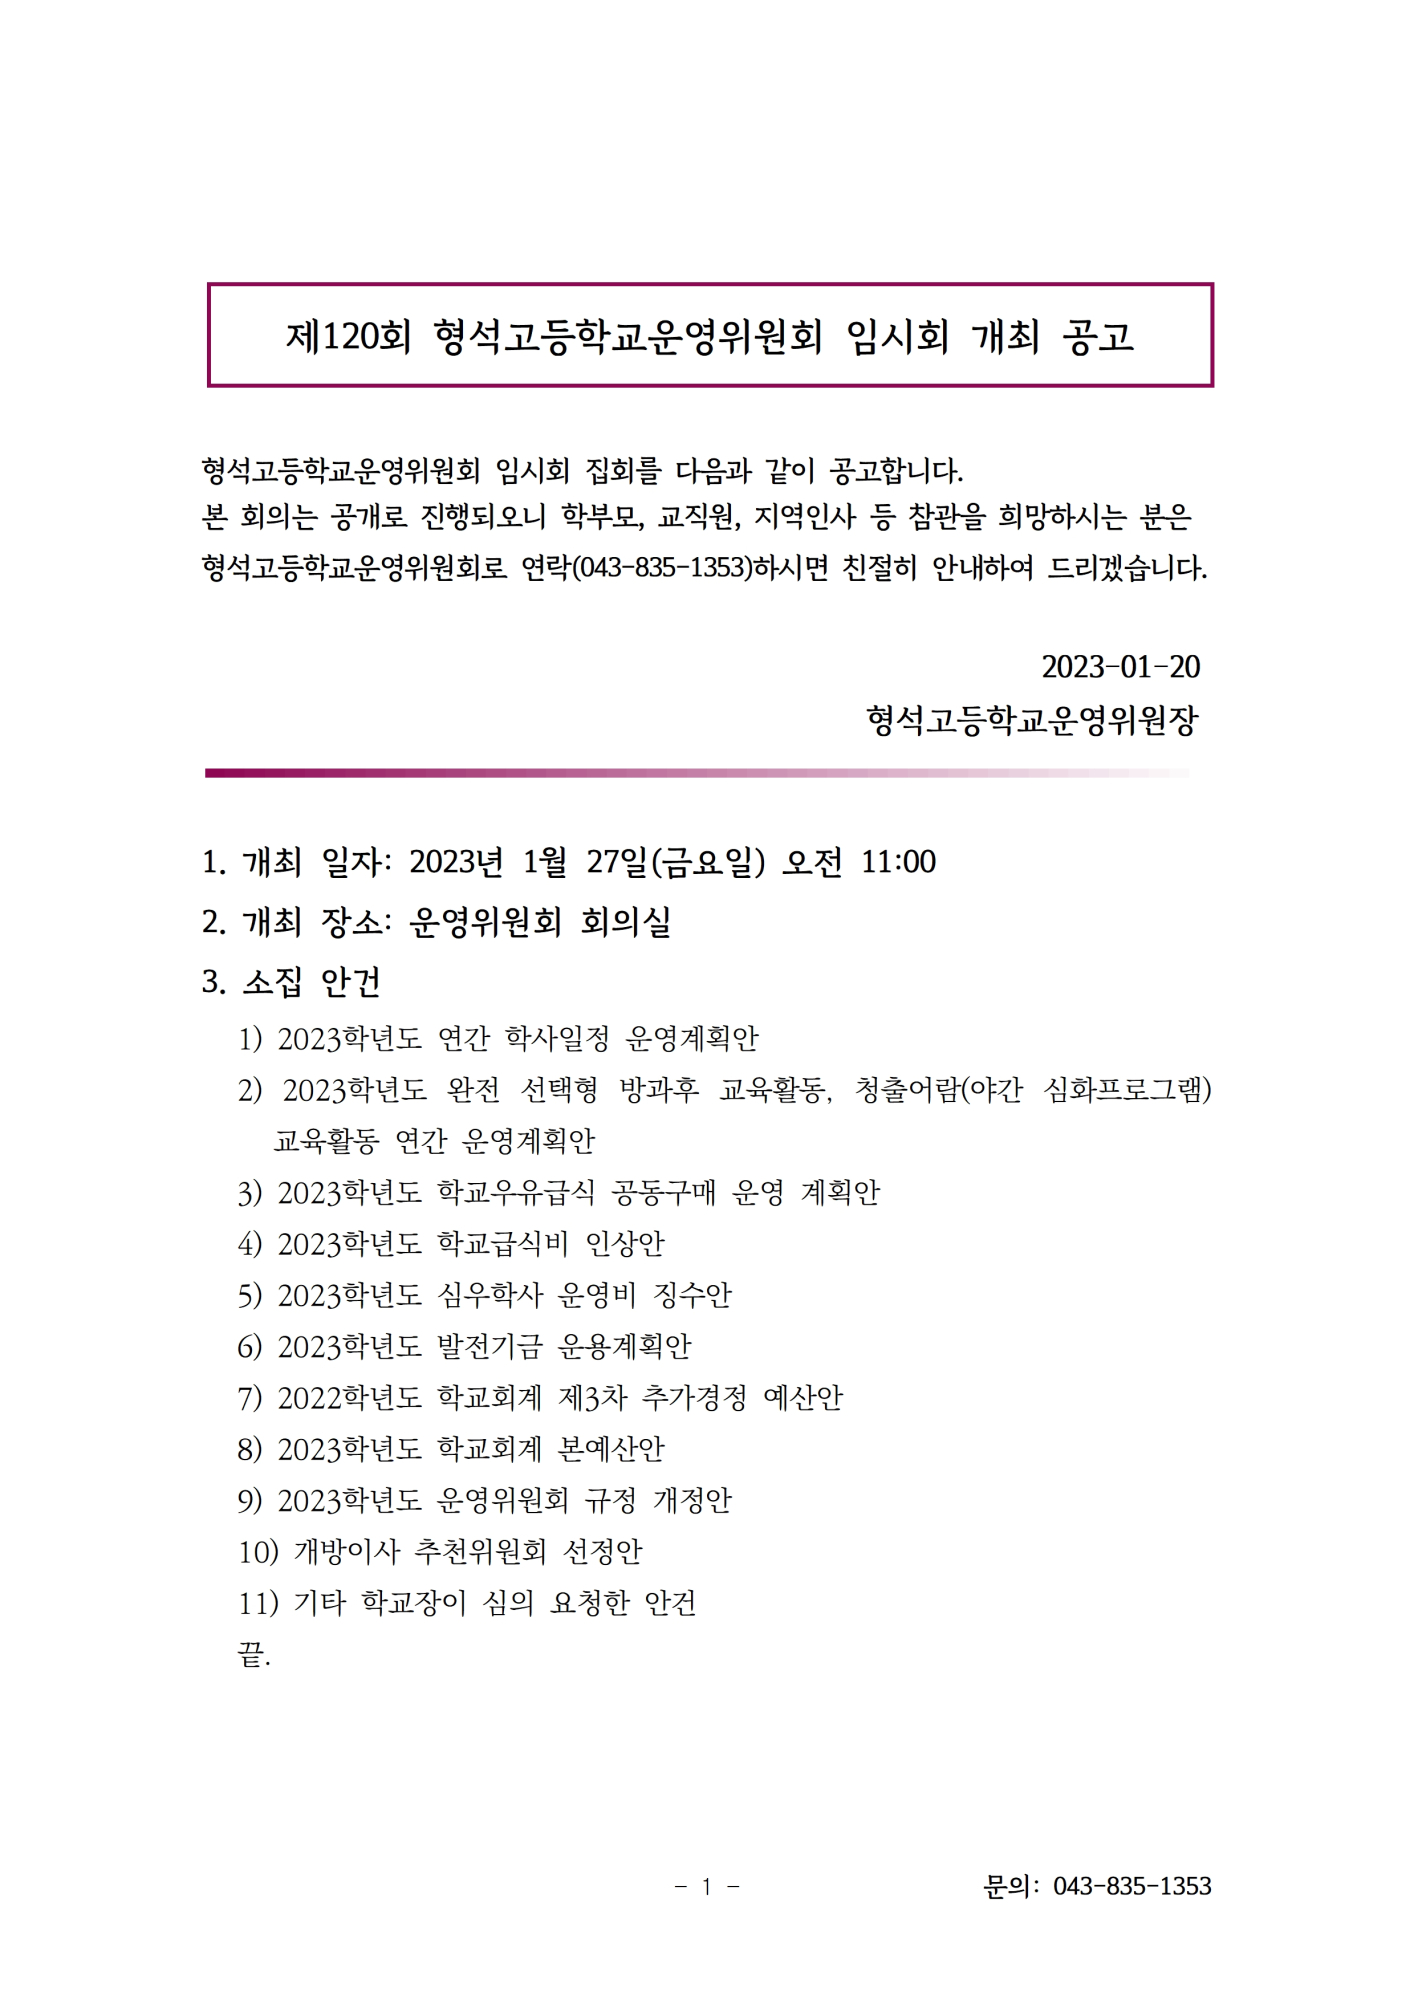 [서식] 학교운영위원회 개최 공고문(홈페이지)001